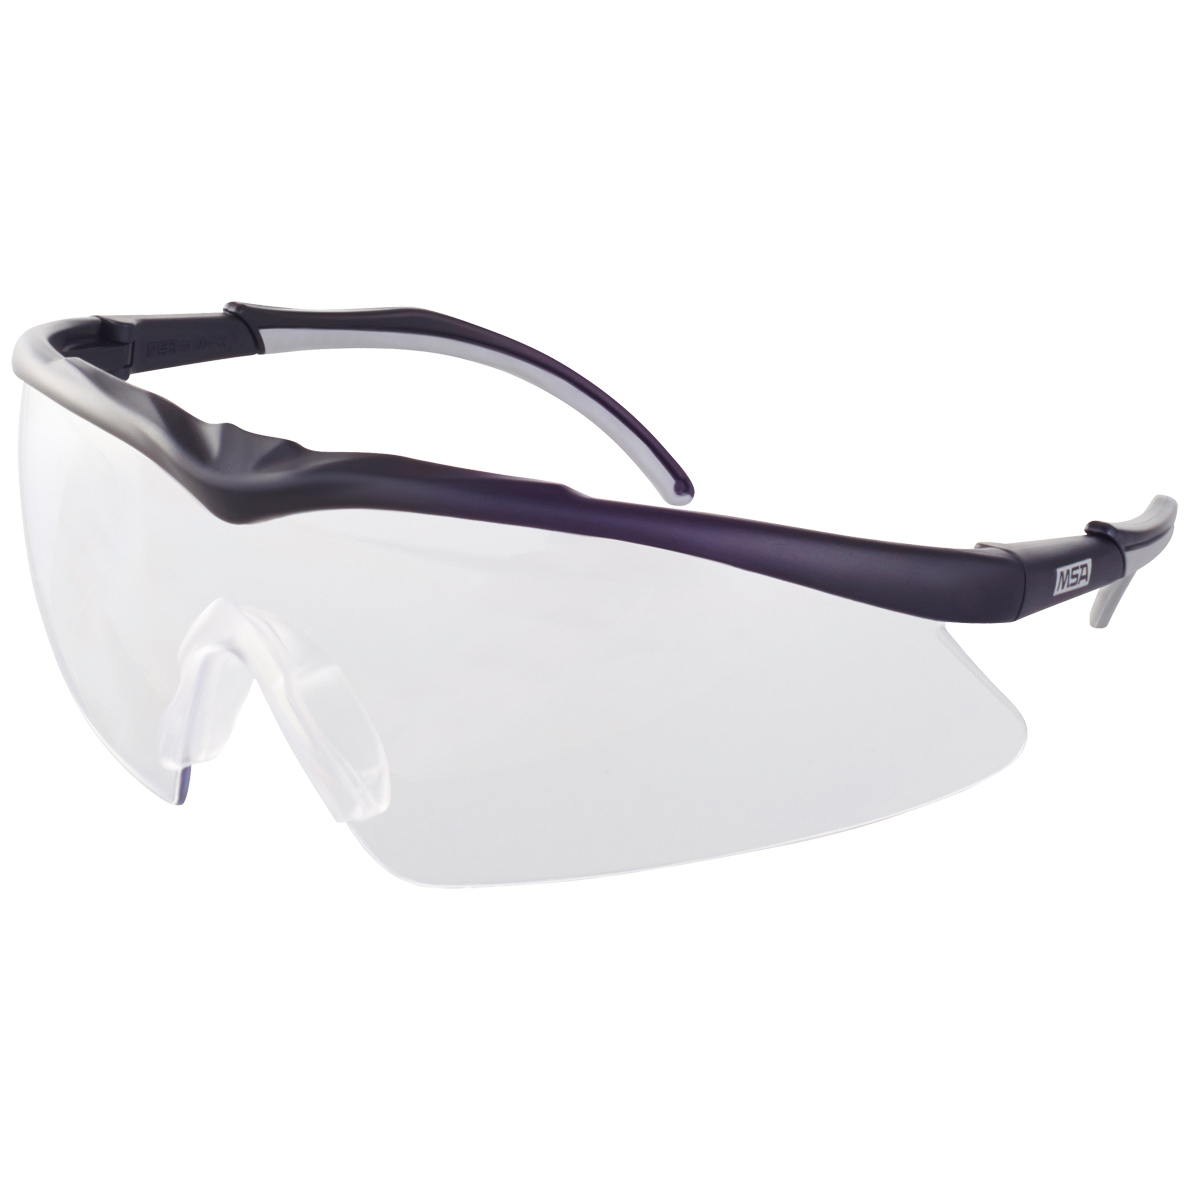 verstellbar Arbeitsschutzbrille Schutzbrille dunkel getönt 